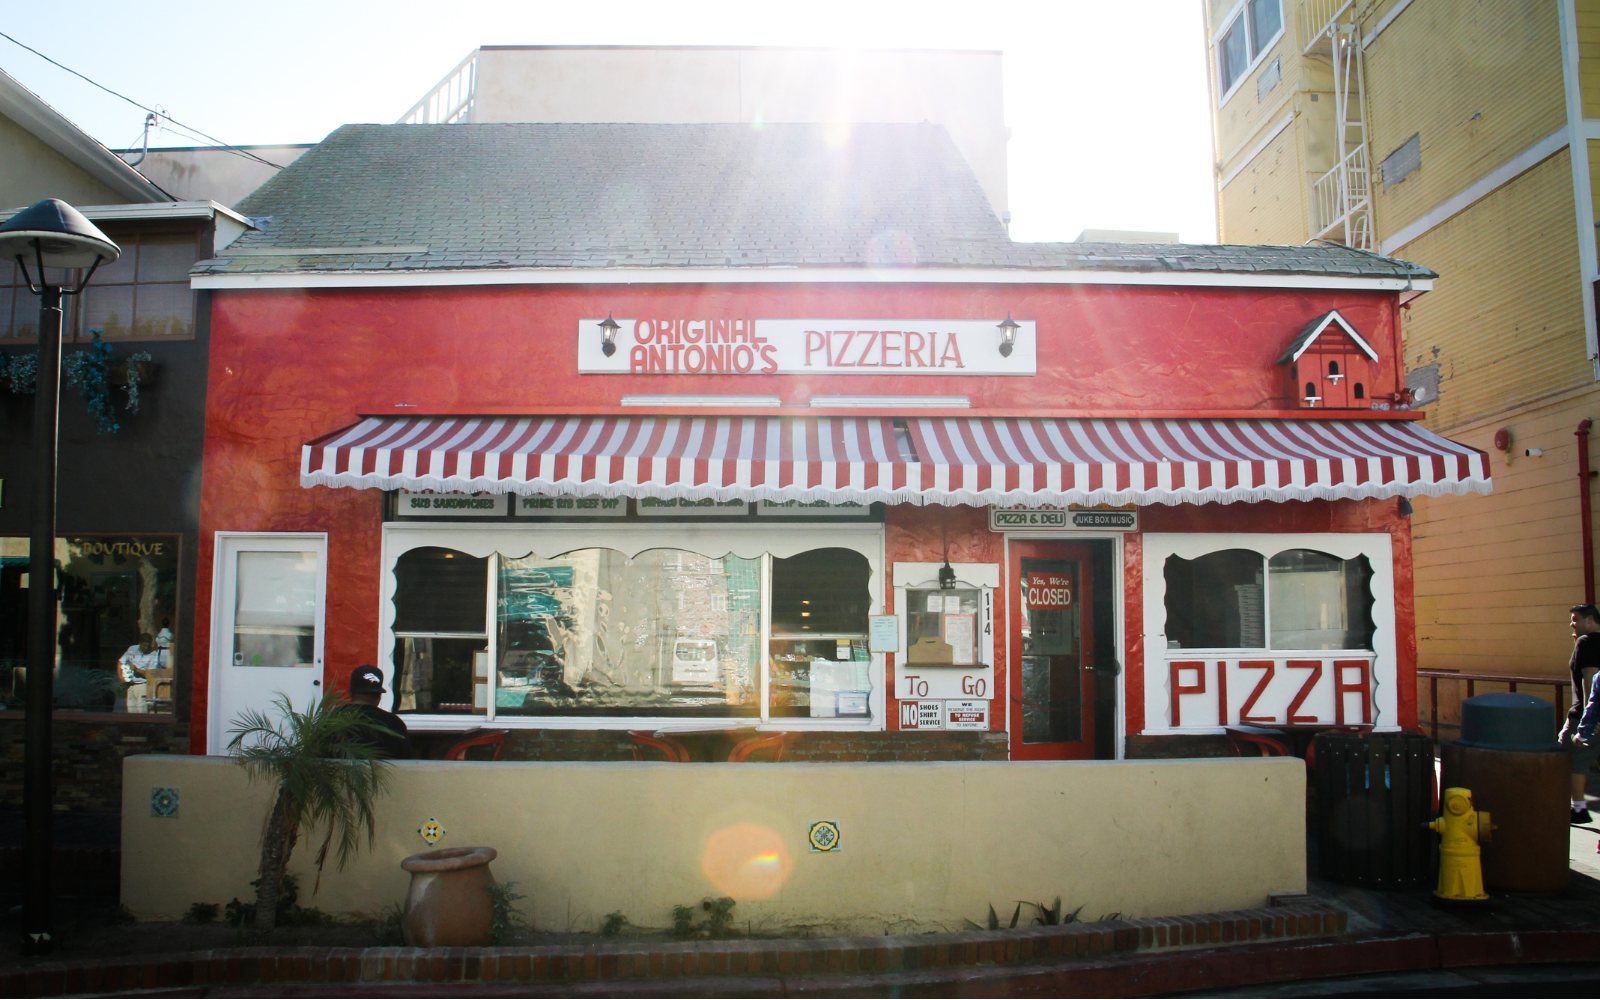 Pizzaria Pizzarella - A sua Boutique da Pizza